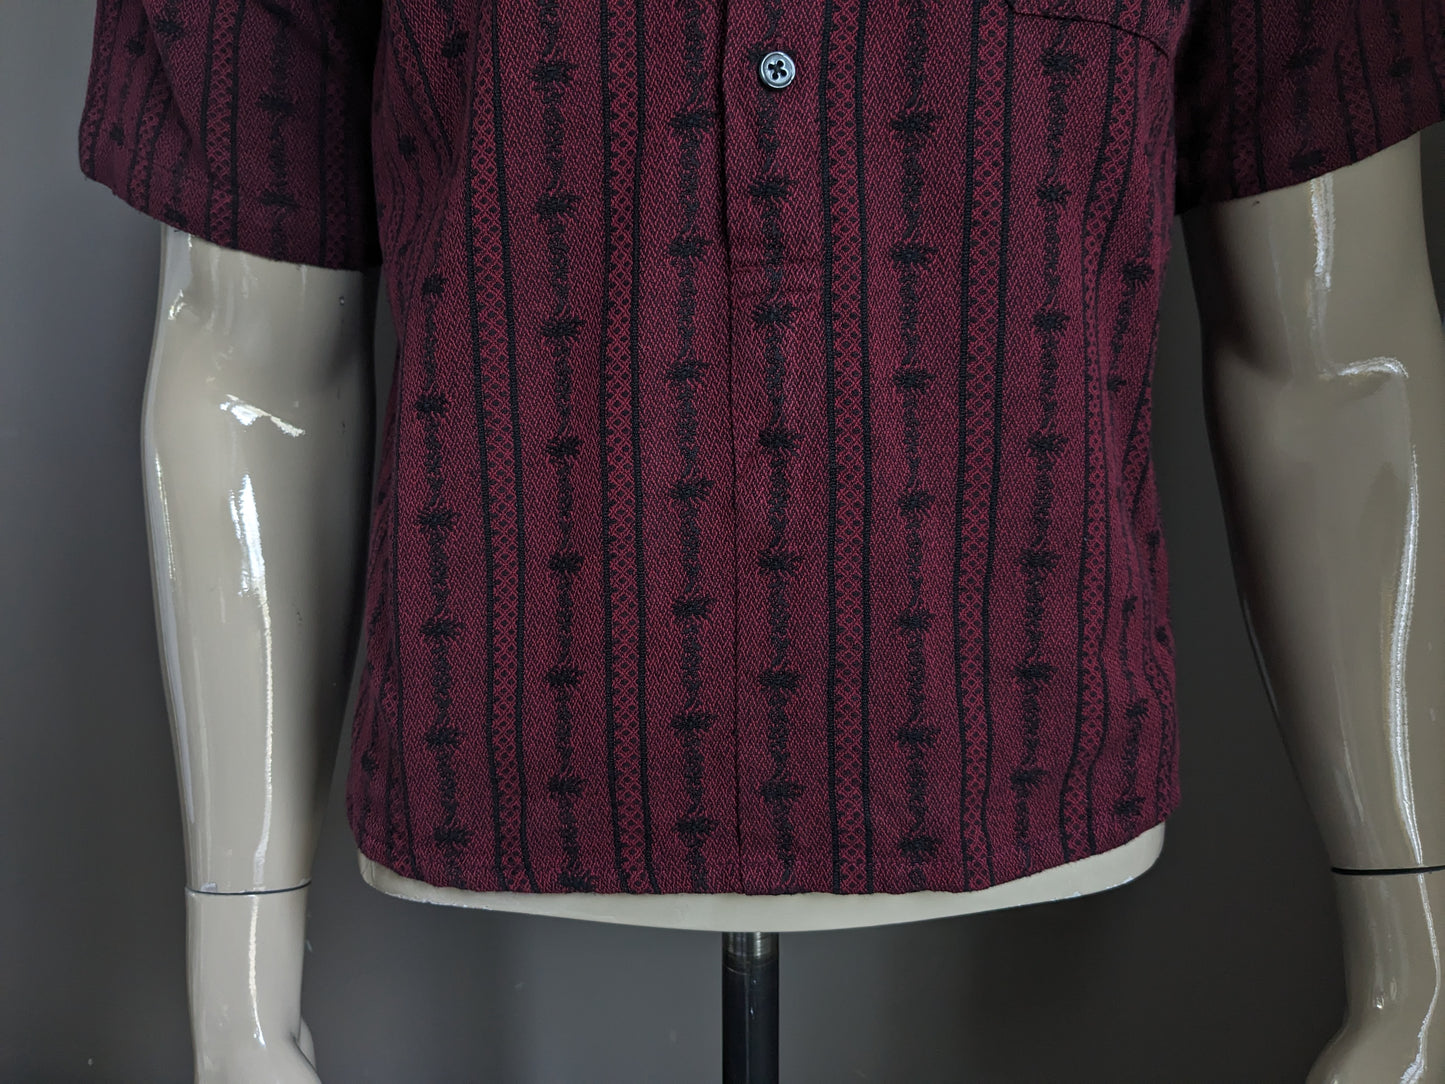 Vintage Atrium -Hemd mit Knöpfen und MAO / Bauern / aufrechtem Kragen. Bordeaux schwarz gefärbt. Größe S / M.